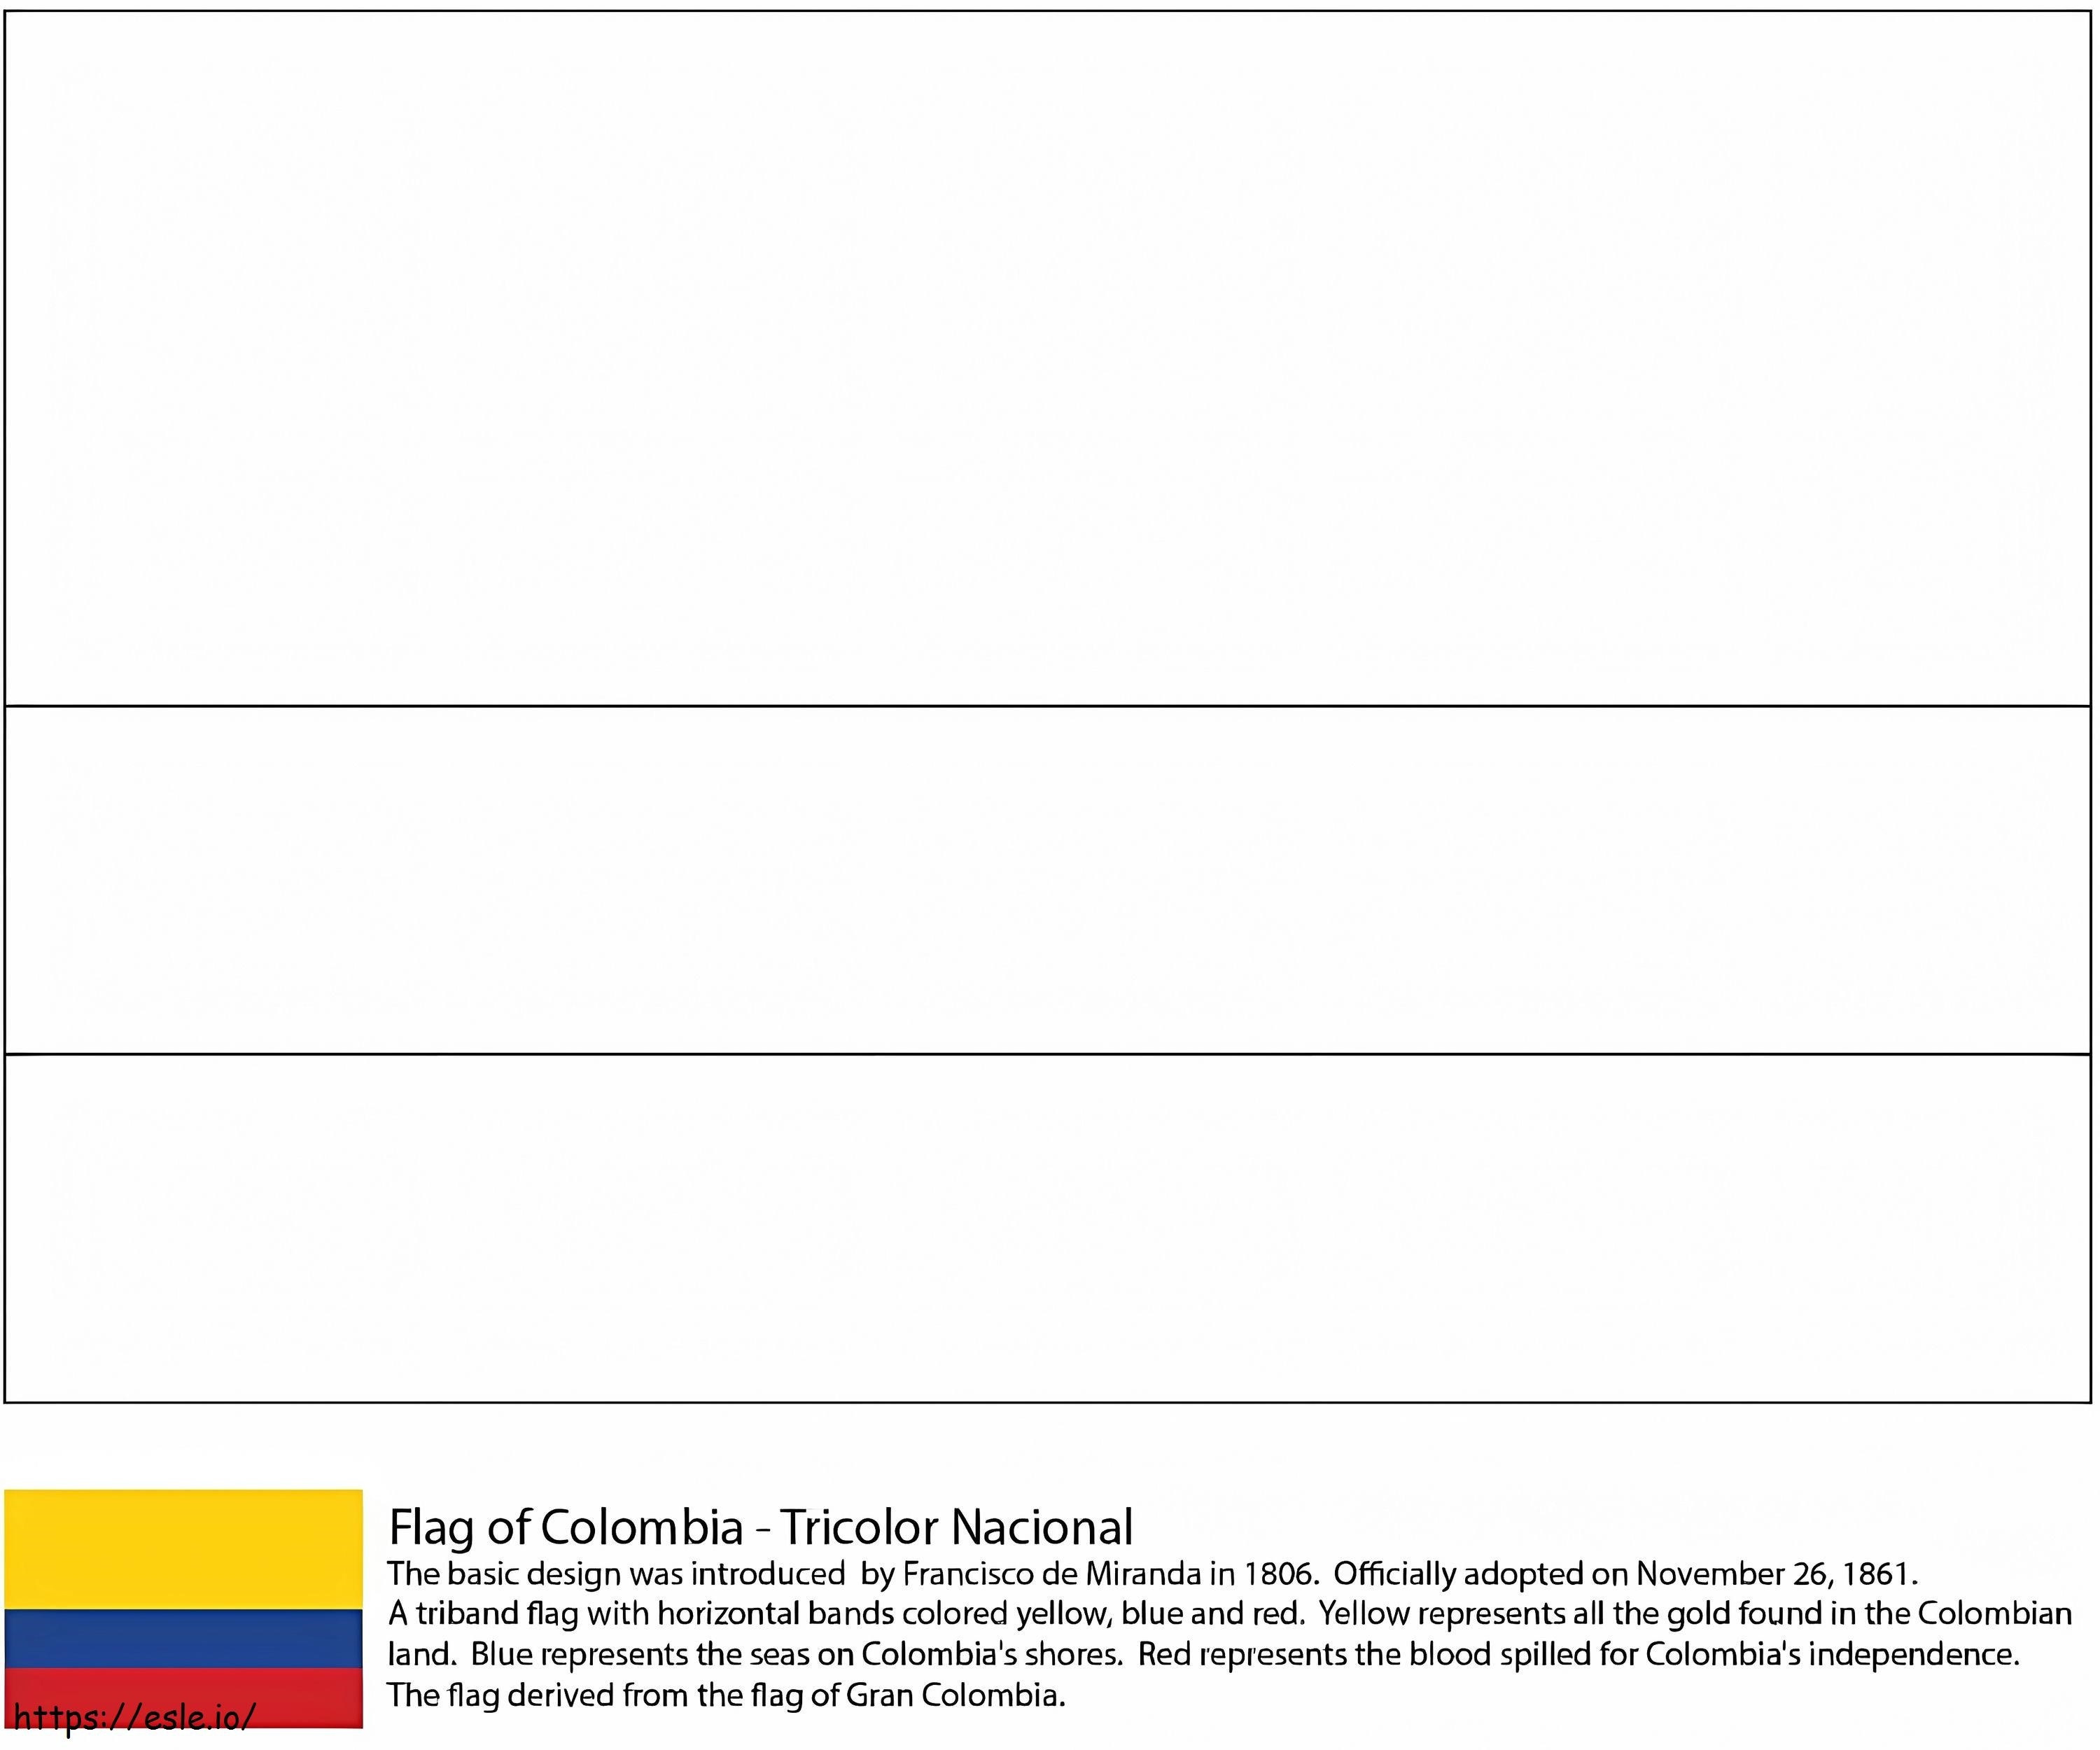 Flaga Kolumbii kolorowanka